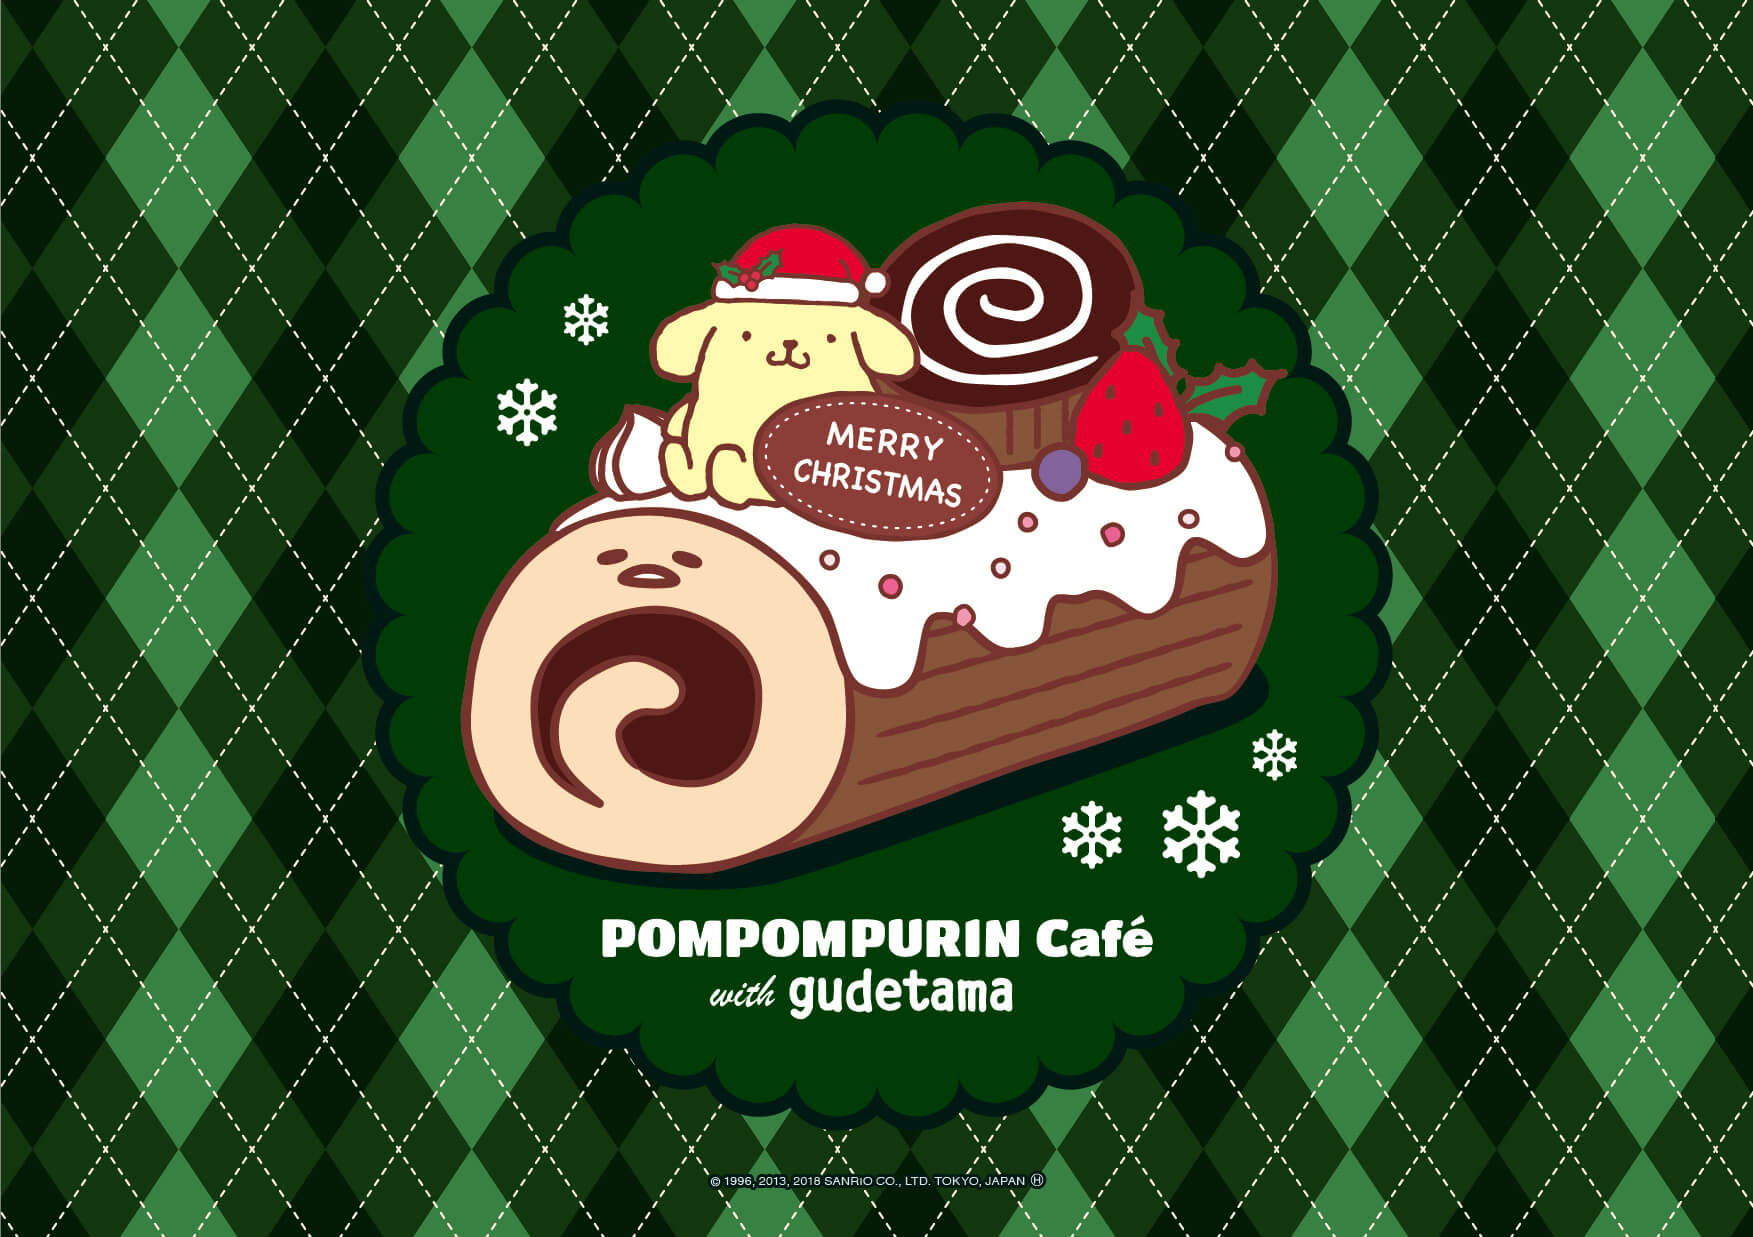 ポムポムプリンカフェ Pompompurin cafe ぐでたま　gudetama cafe 横浜 名古屋 Yokohama Nagoya_ランチョンマット